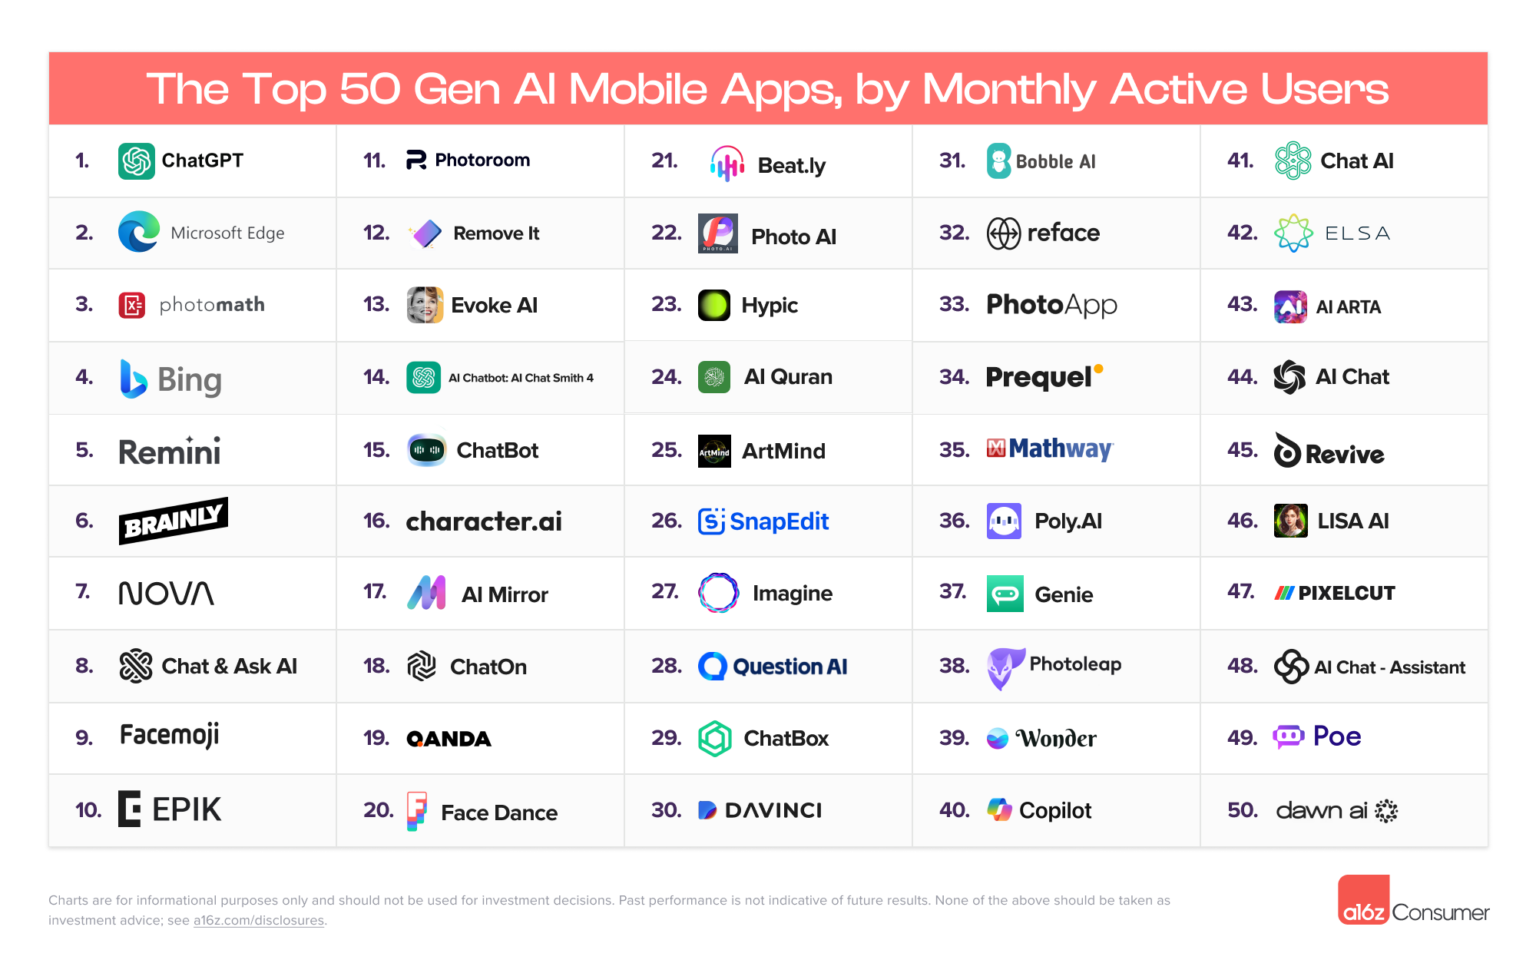 월간 방문 수 기준 상위 50개의 Gen AI 모바일 앱